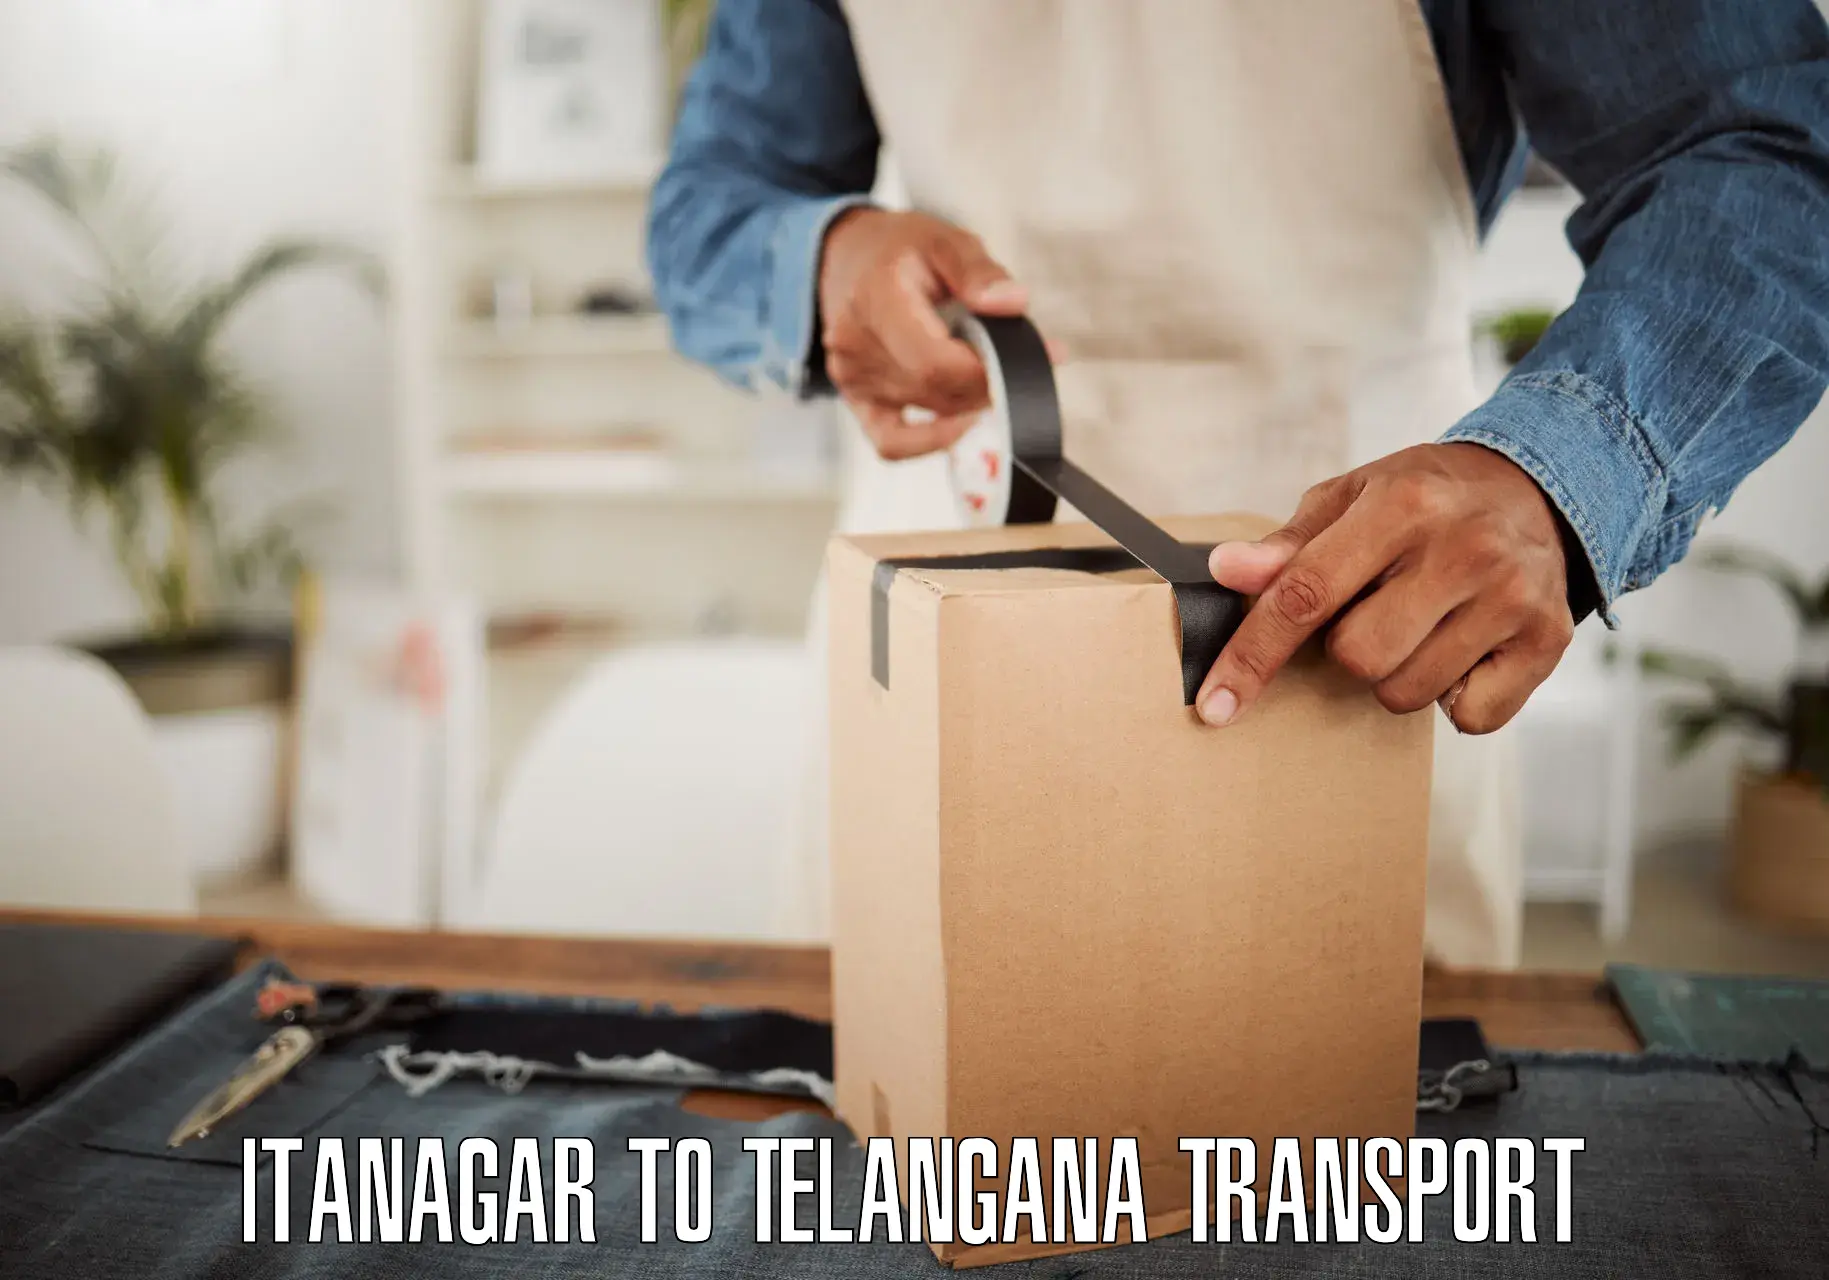 Two wheeler transport services Itanagar to Eligedu